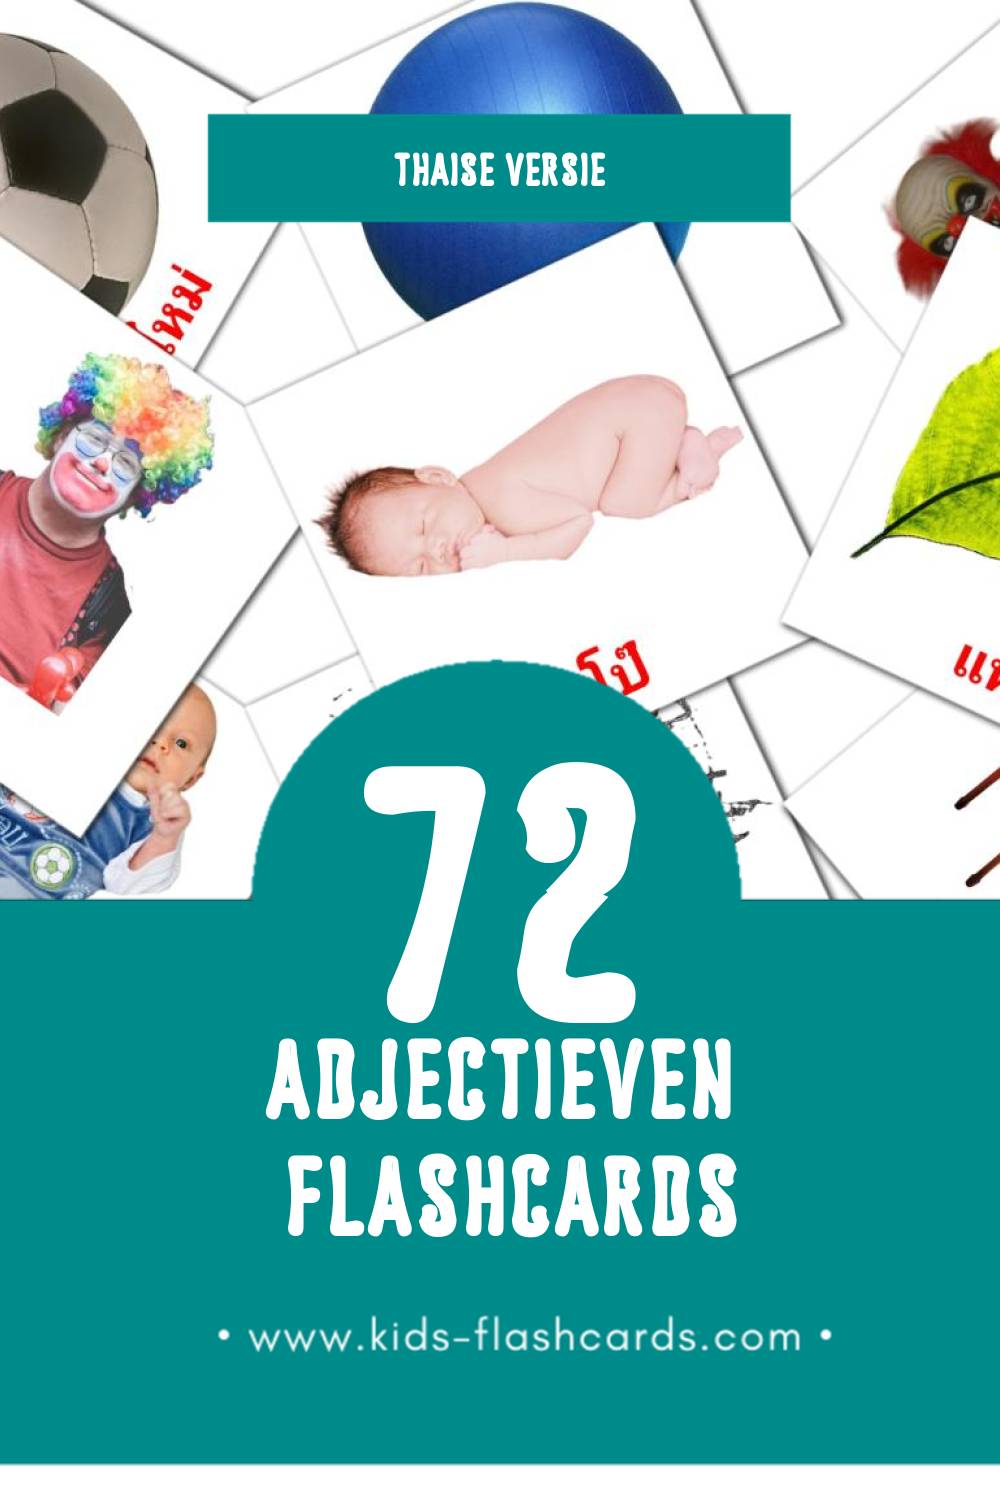 Visuele คุณศัพท์ Flashcards voor Kleuters (72 kaarten in het Thais)